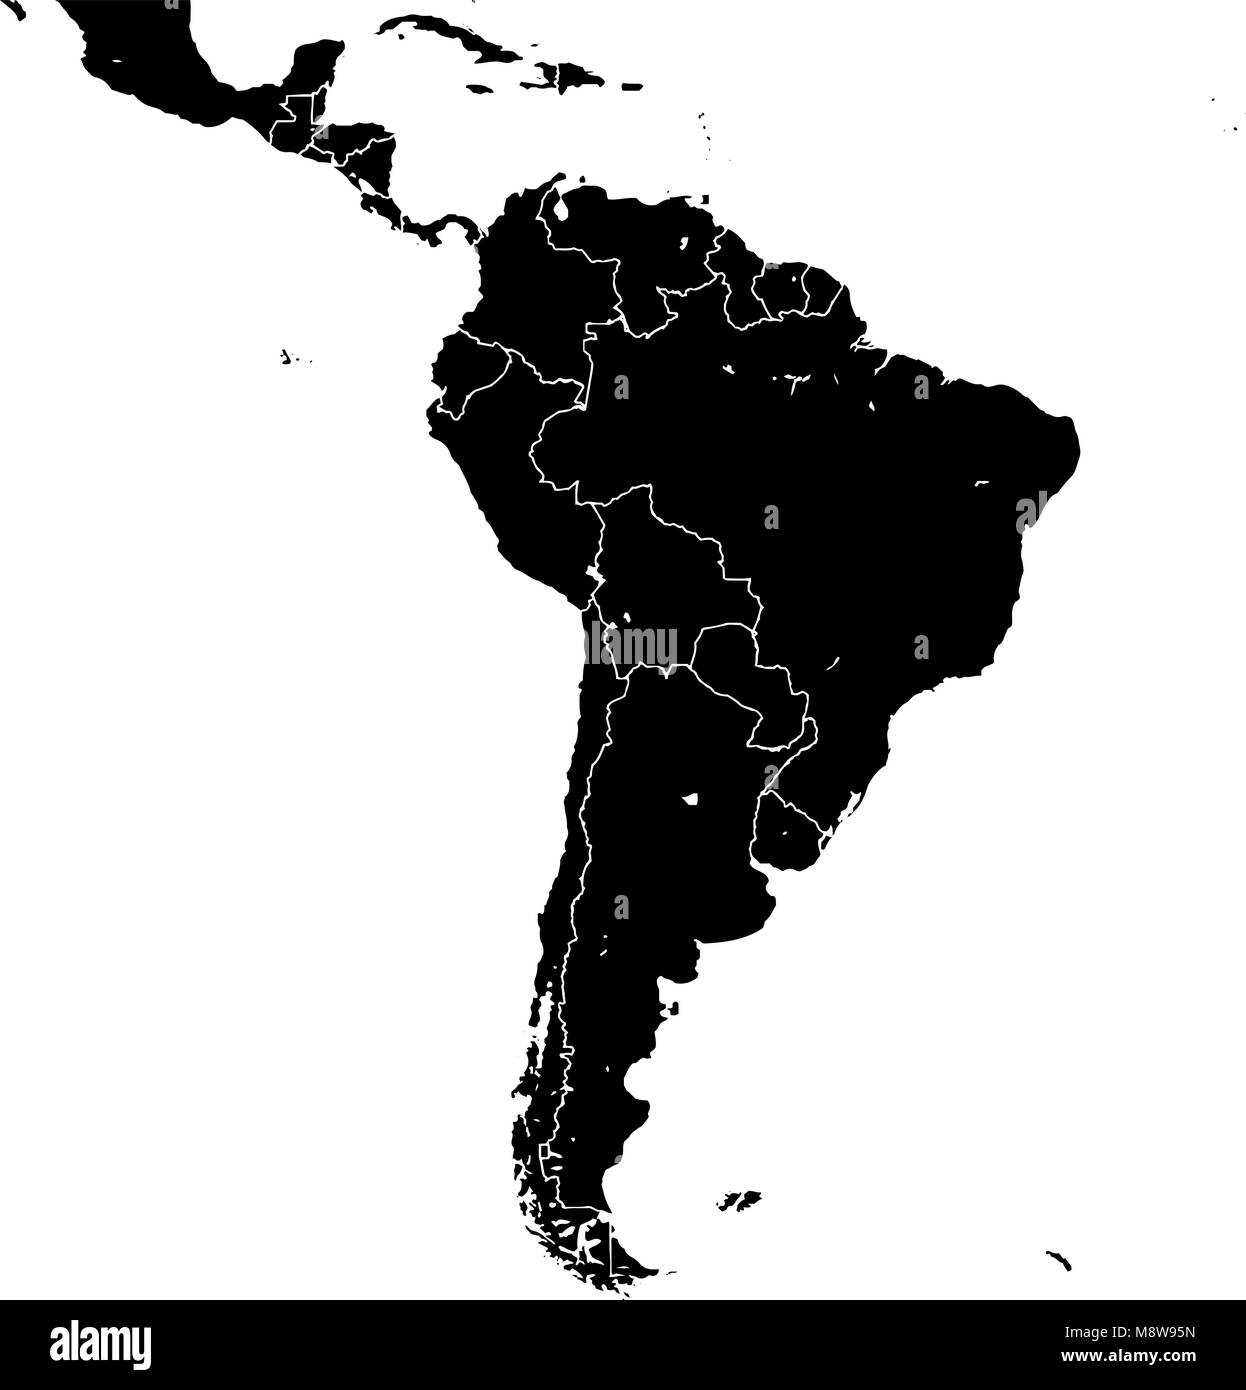 Südamerika silhouette Vektorkarte. Schwarze und weiße Version verwendbar für Travel Marketing, Immobilien und Bildung. Stock Vektor